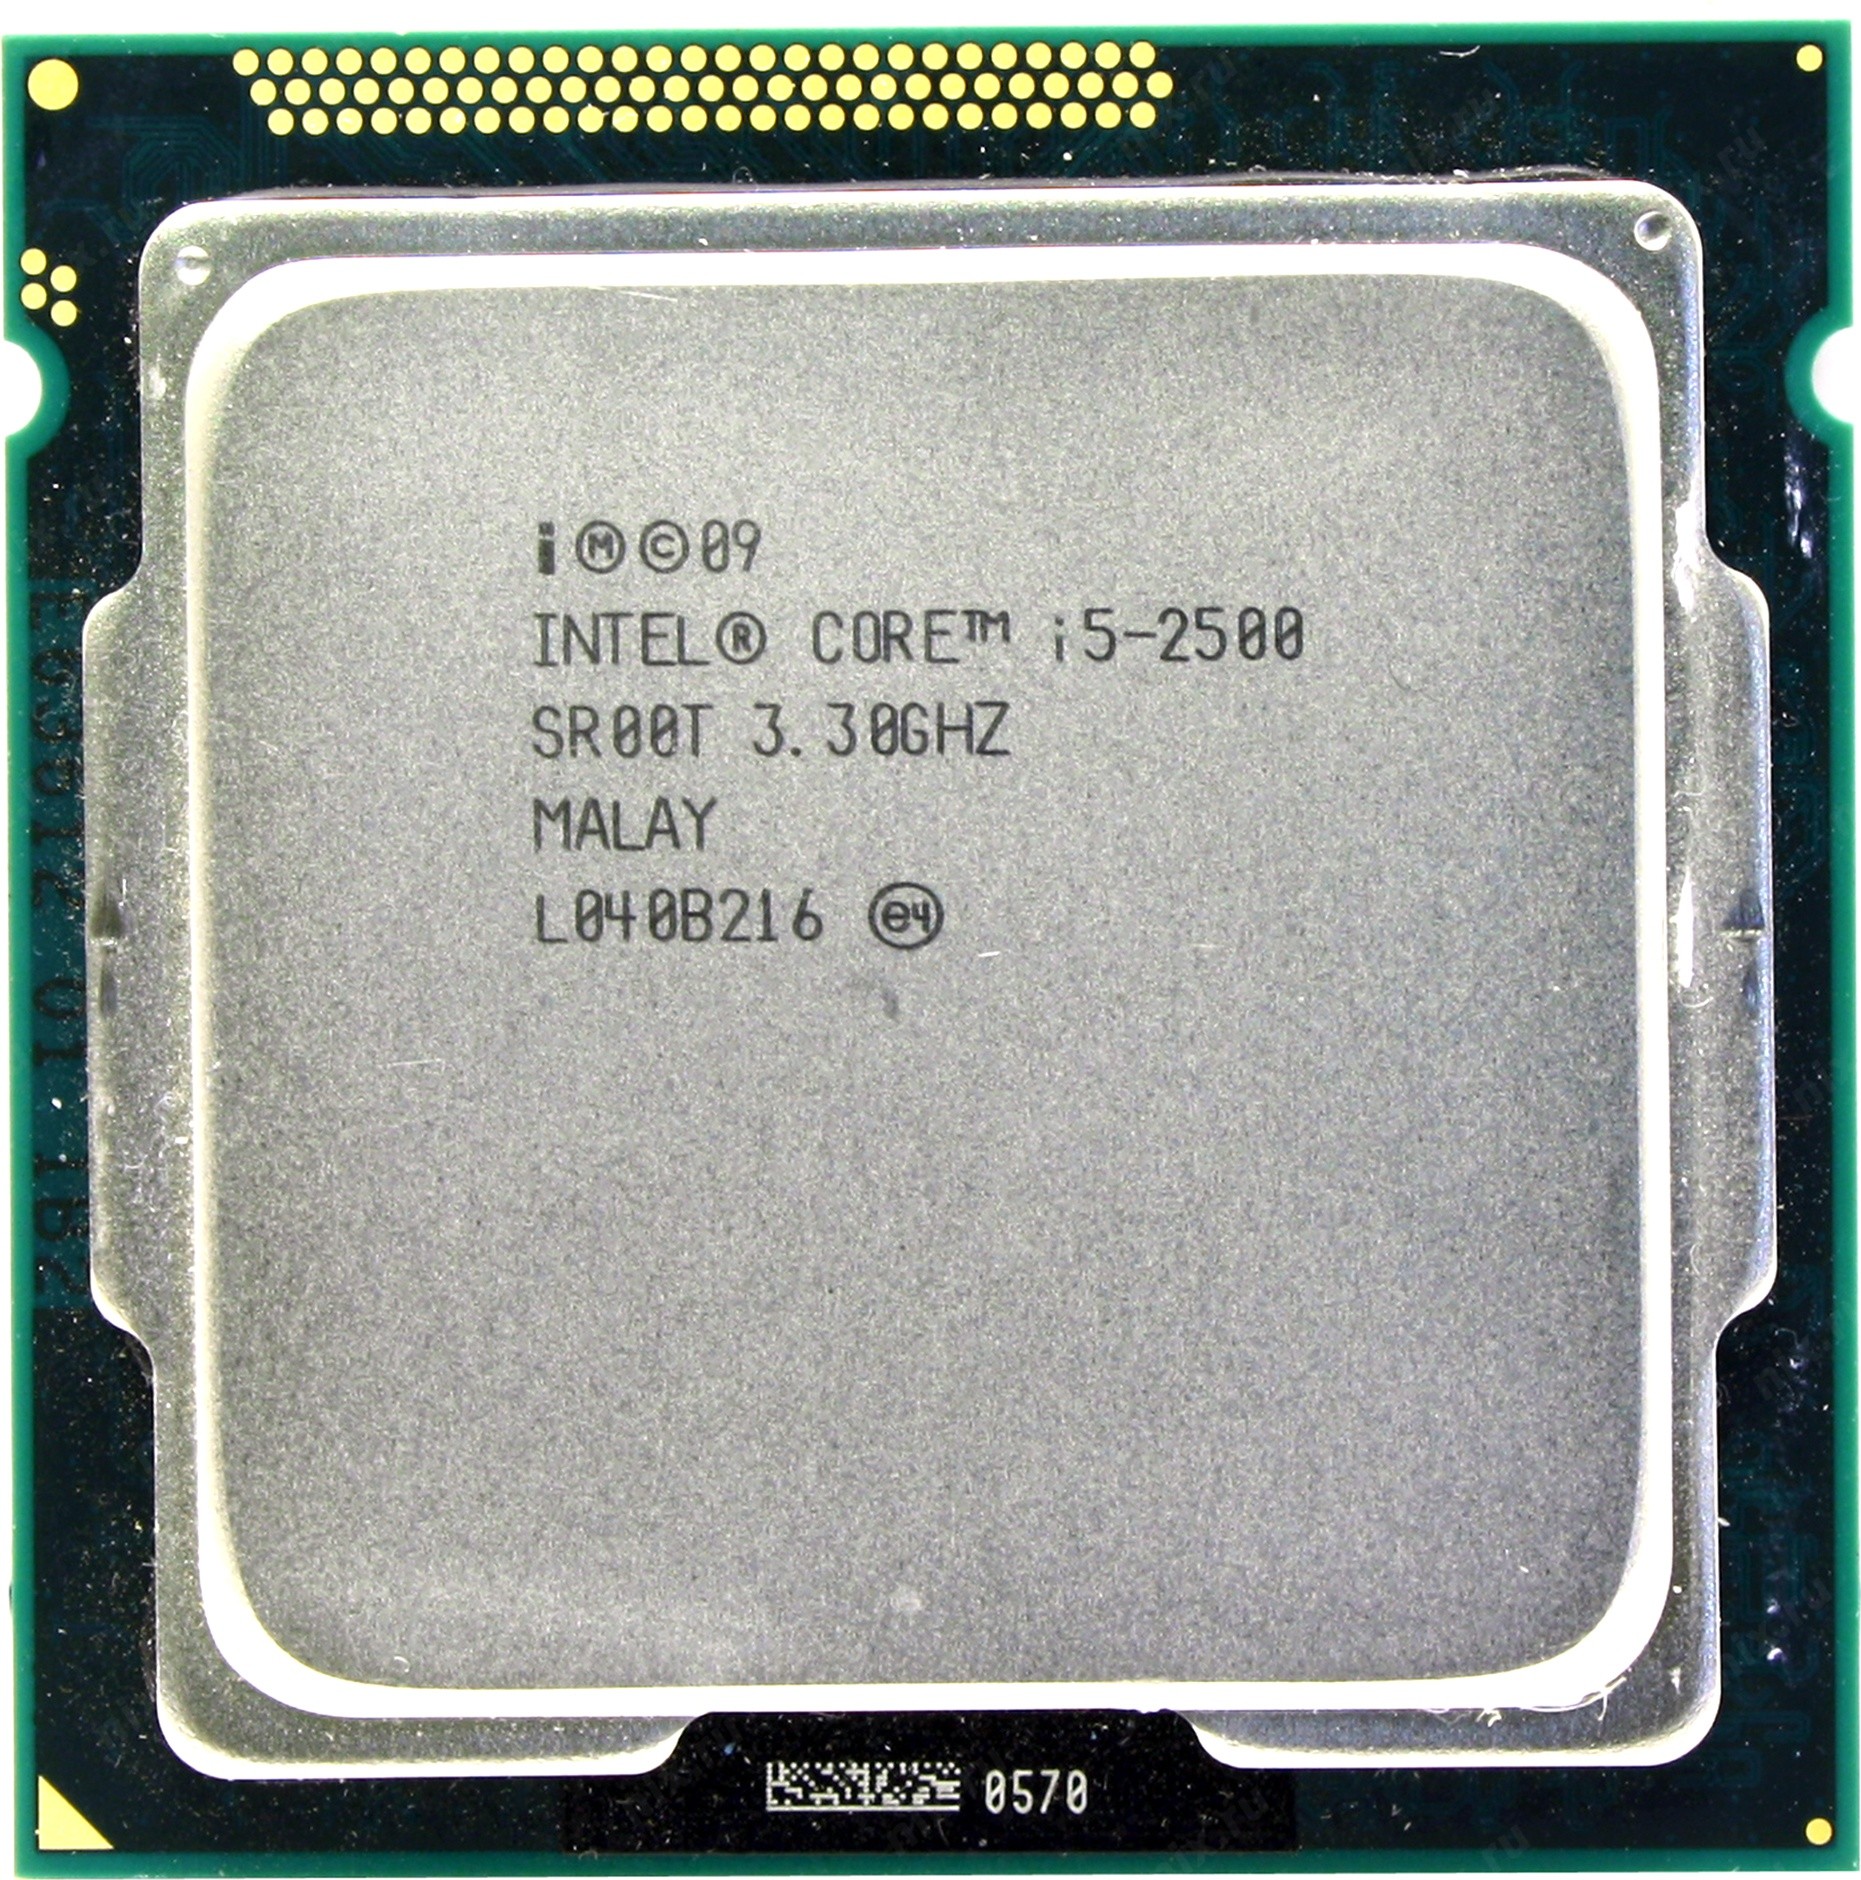 Intel core i5 2500k скачать драйвера